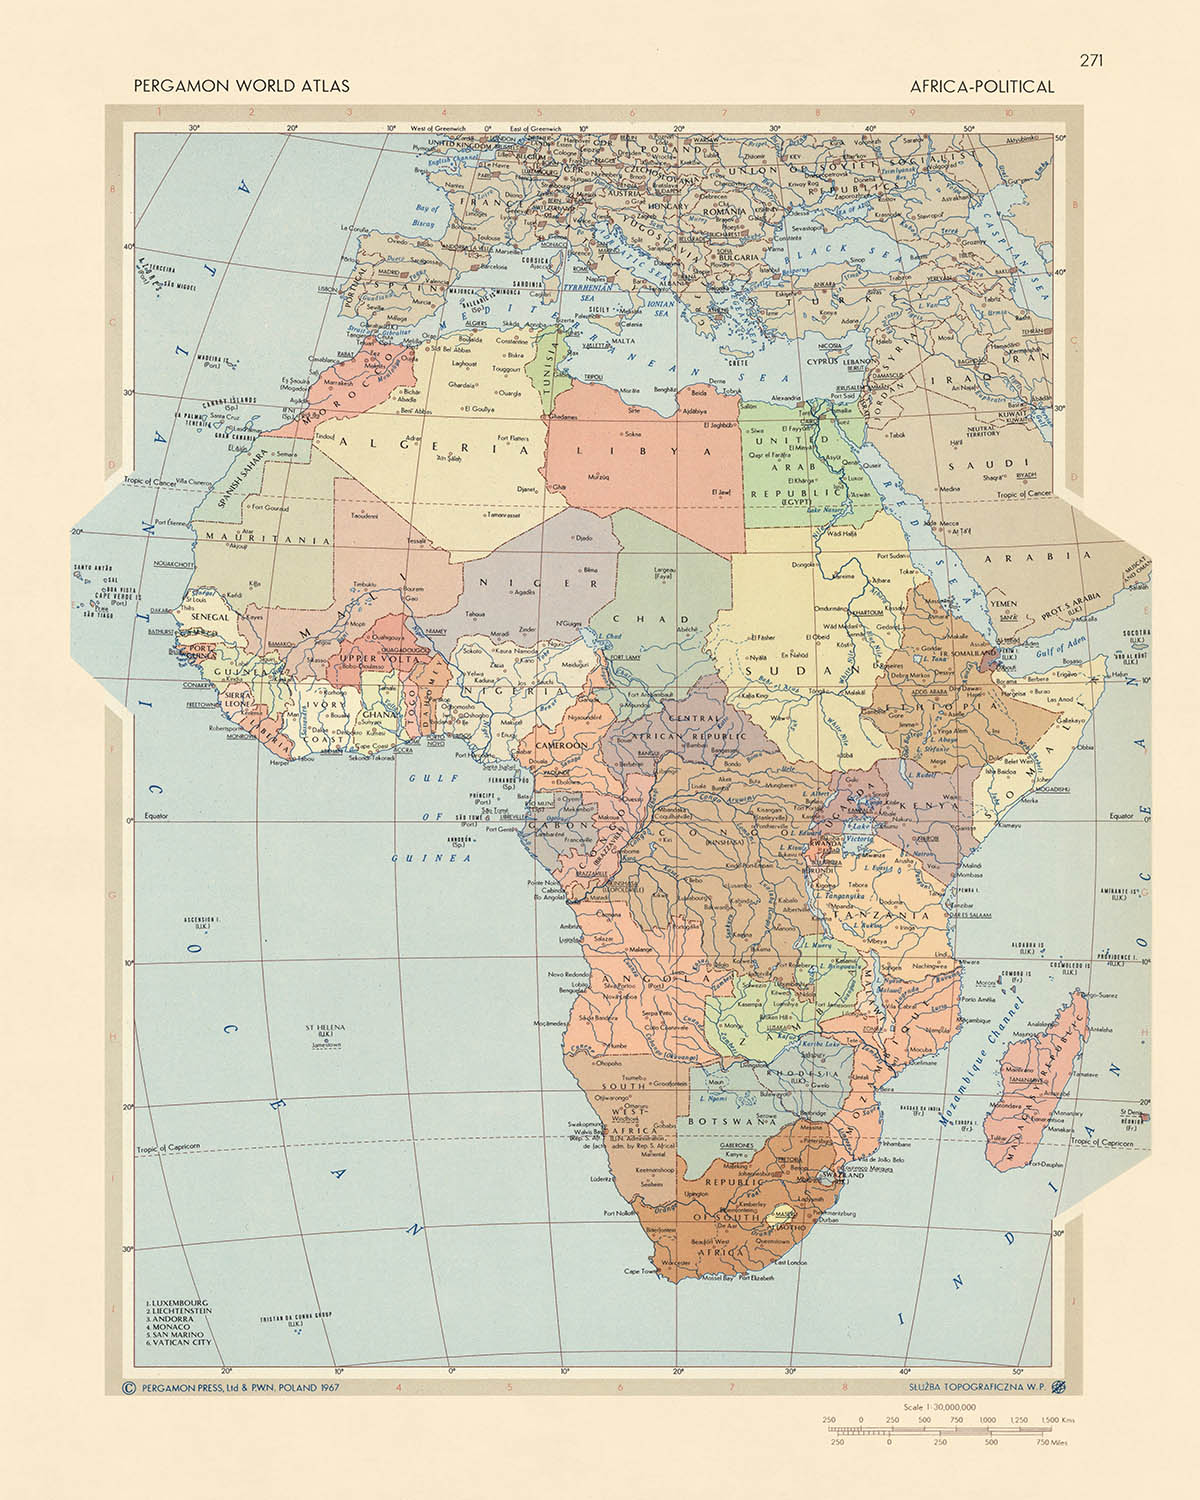 Karte der Alten Welt: Politische Karte Afrikas vom polnischen Topographiedienst der Armee, 1967: Eine Momentaufnahme des geopolitischen Klimas, des detaillierten künstlerischen Stils und der genauen kartografischen Projektion